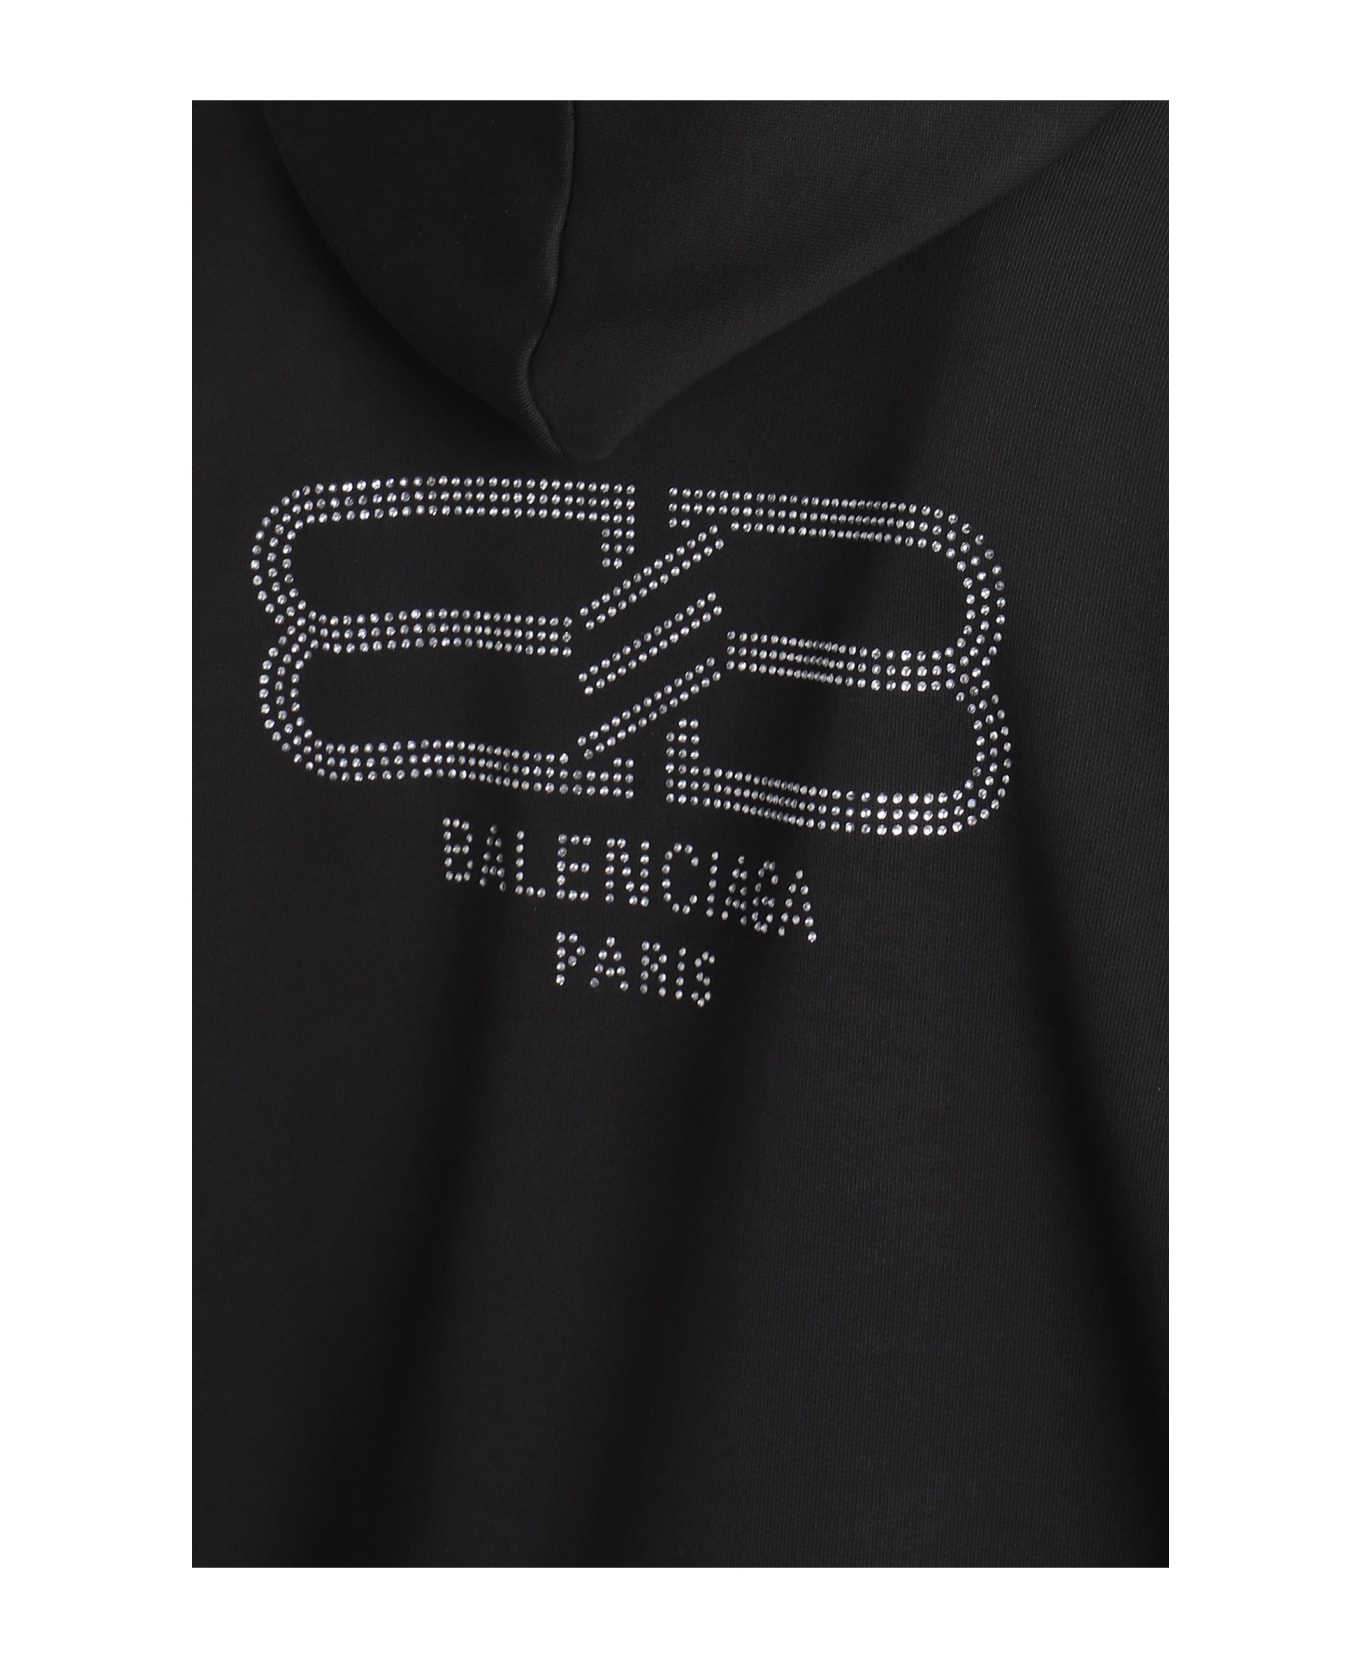 Balenciaga Sweatshirt - Washed Black フリース